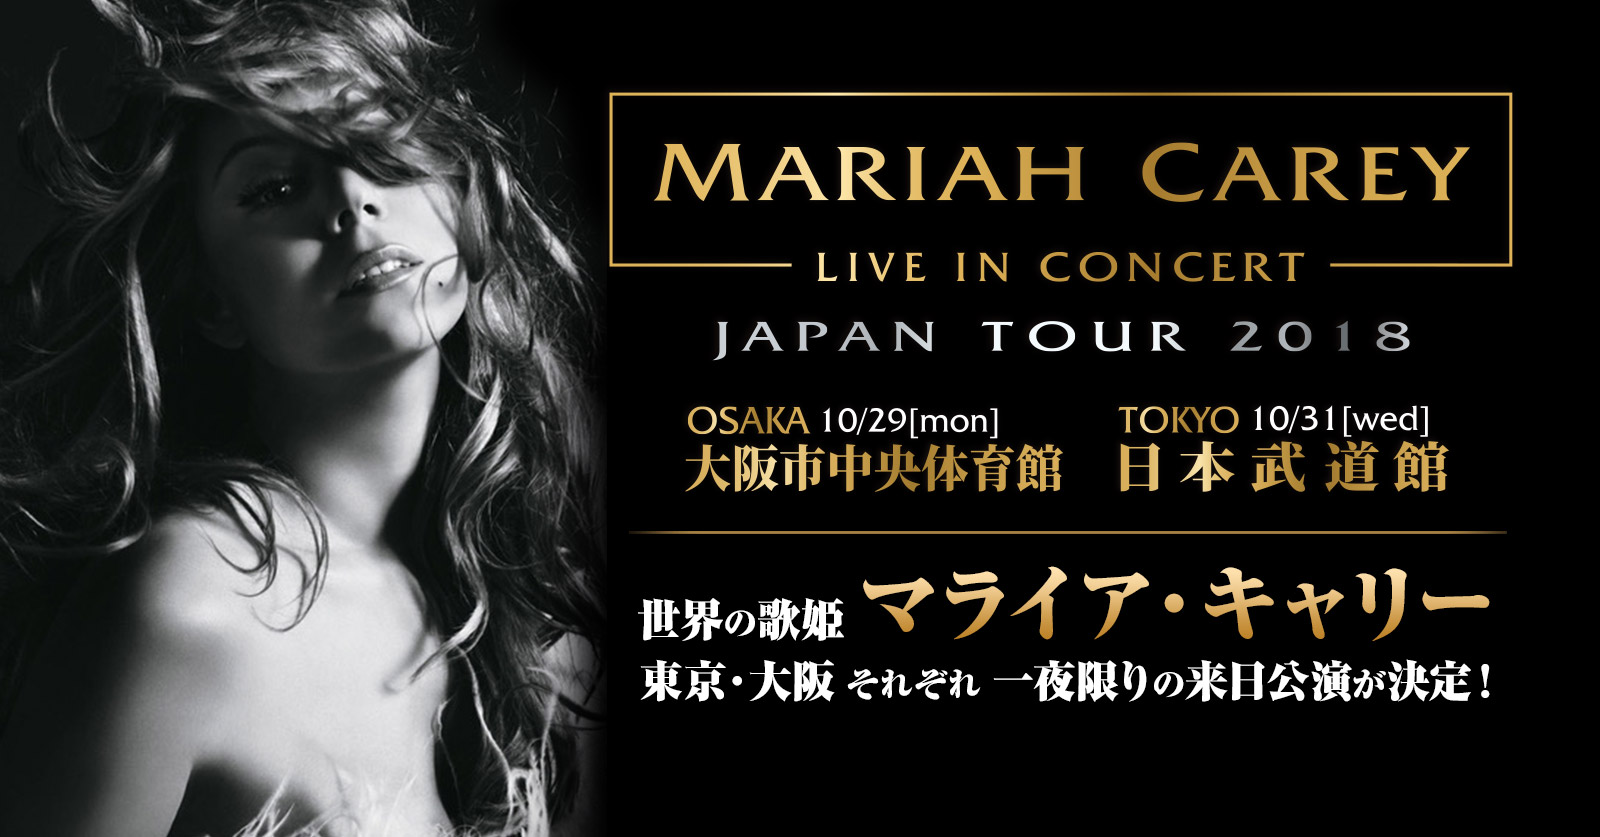 マライア・キャリー] MARIAH CAREY in Concert JAPAN TOUR 2018 来日 ...